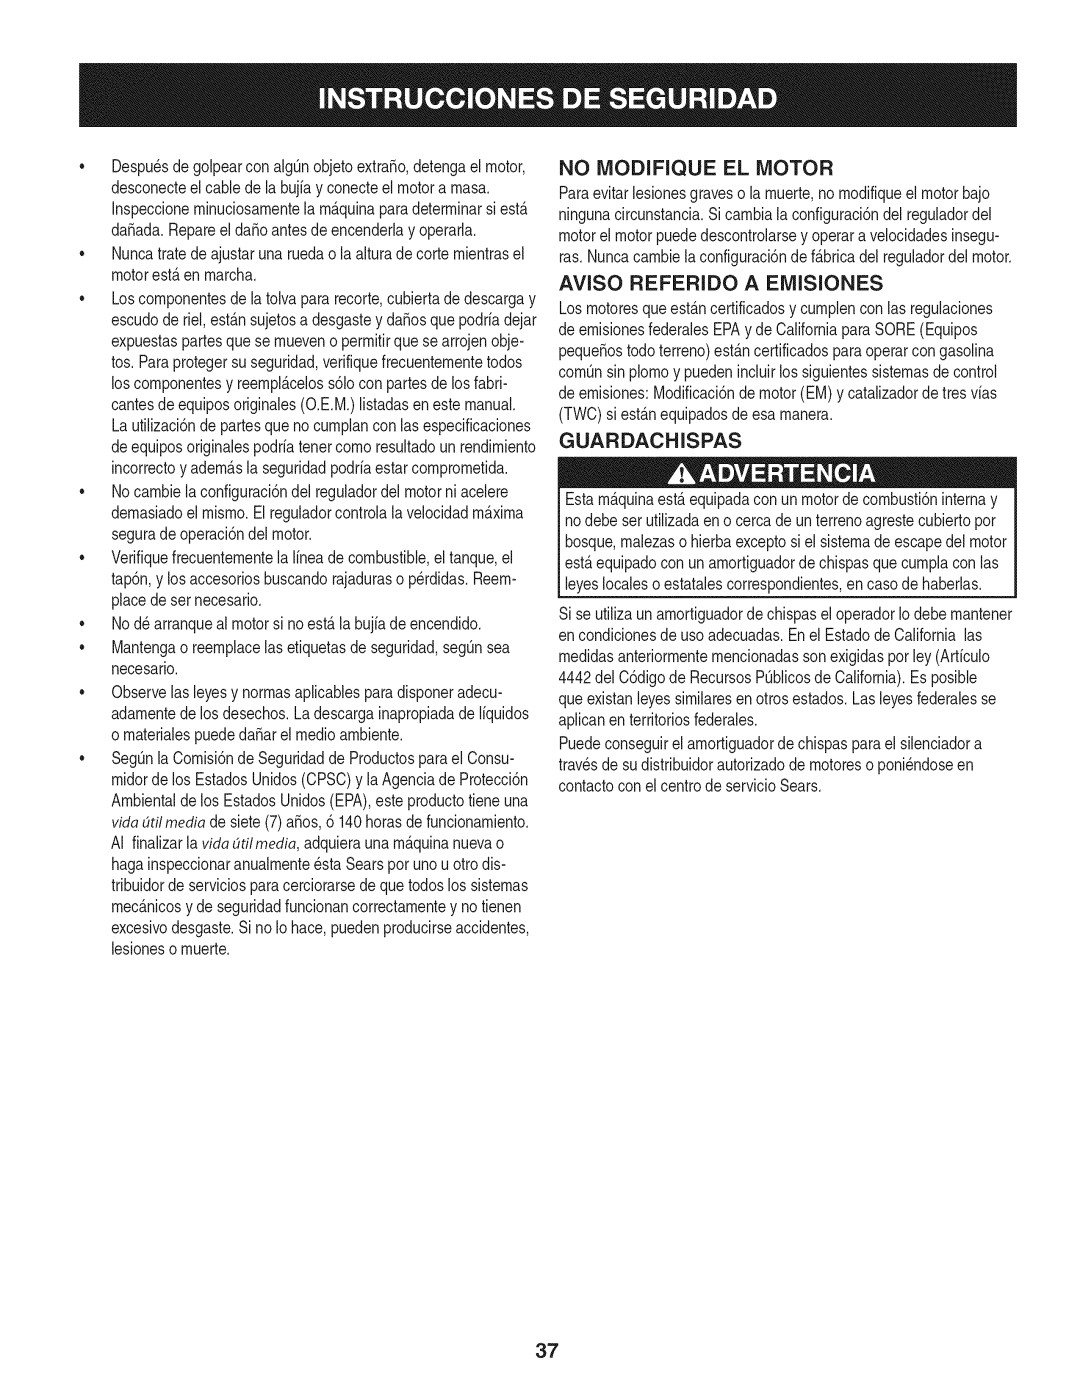 Craftsman 247.38528 manual No Modifique El Motor, Aviso Referido A Emisiones, Guardachispas 